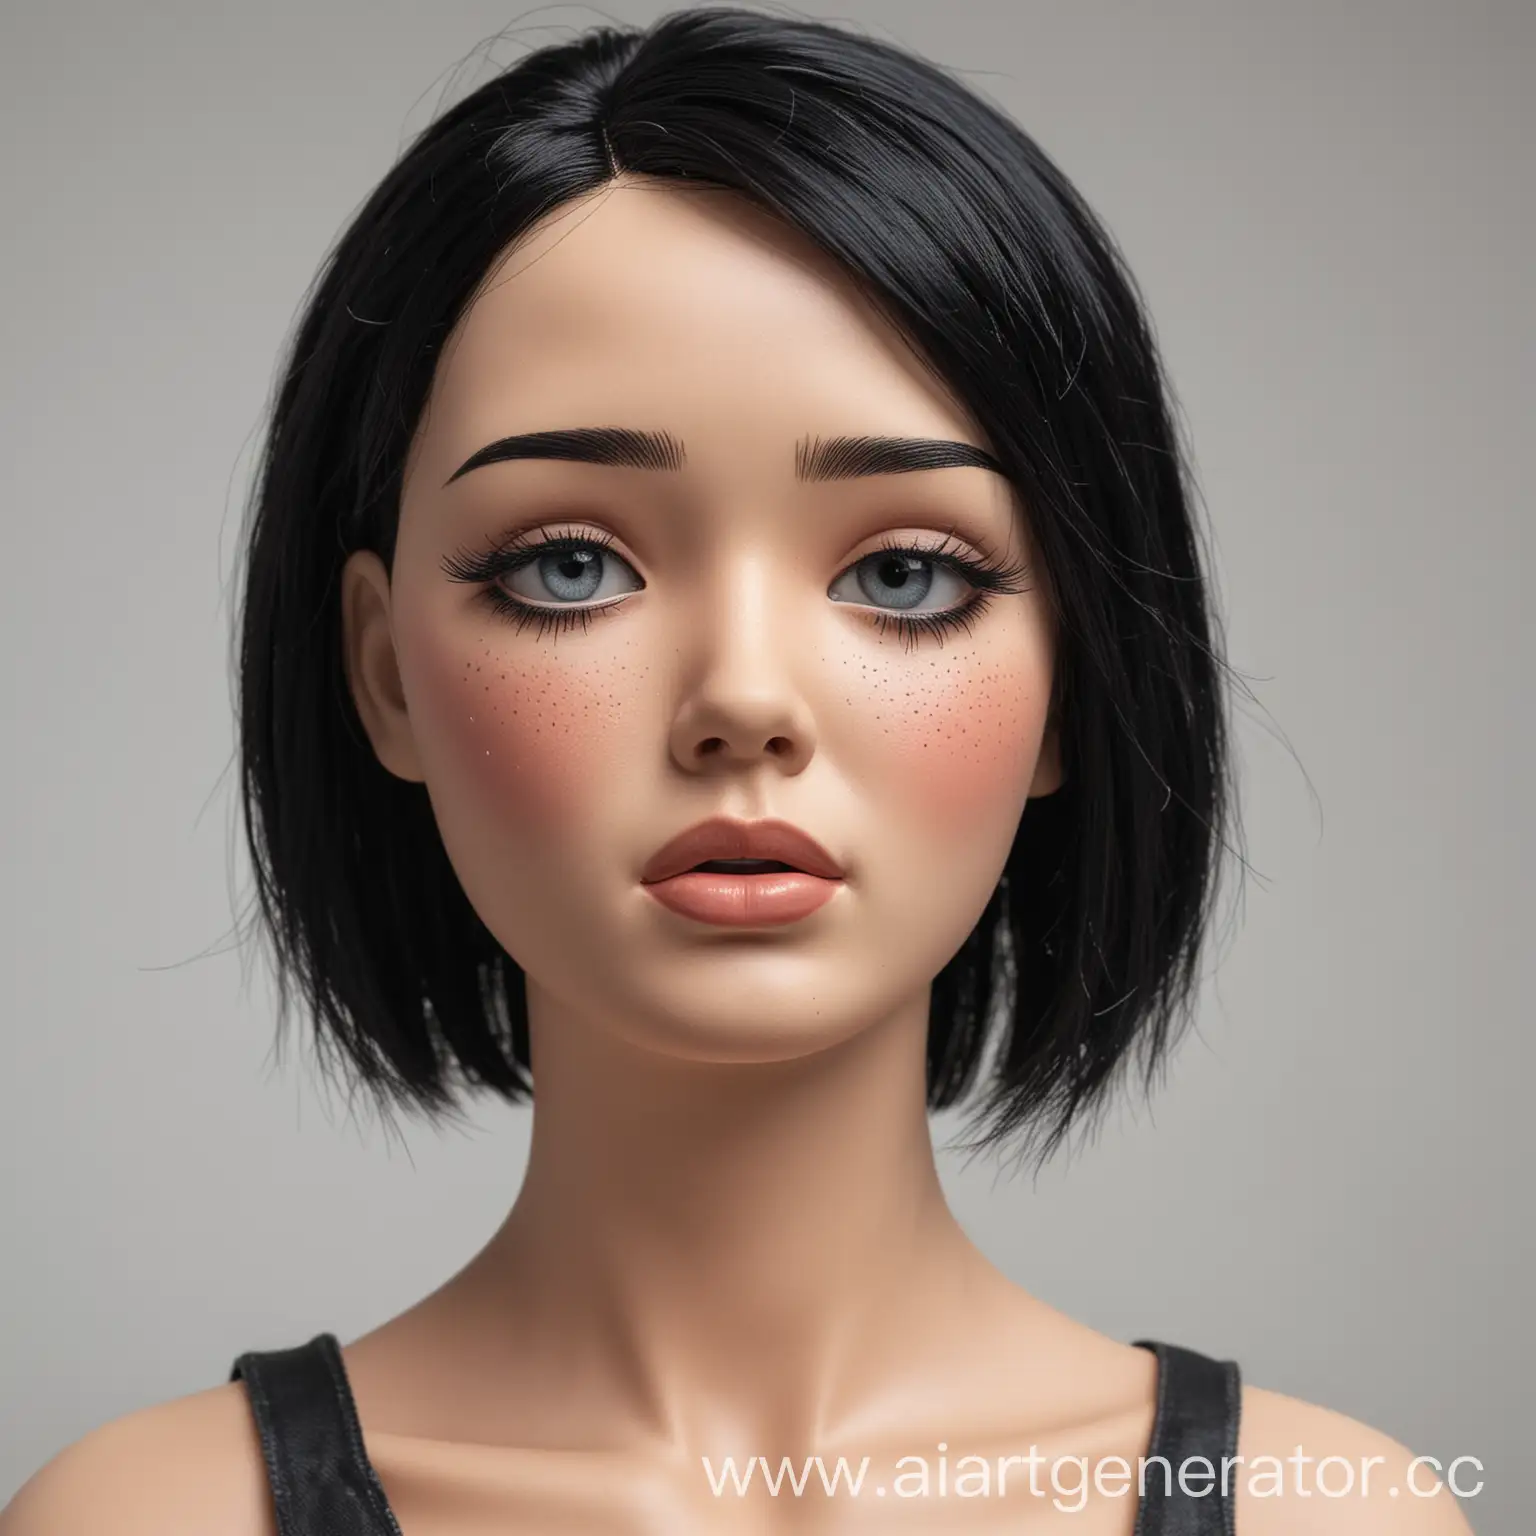 Девочка манекен с черными волосами плачет